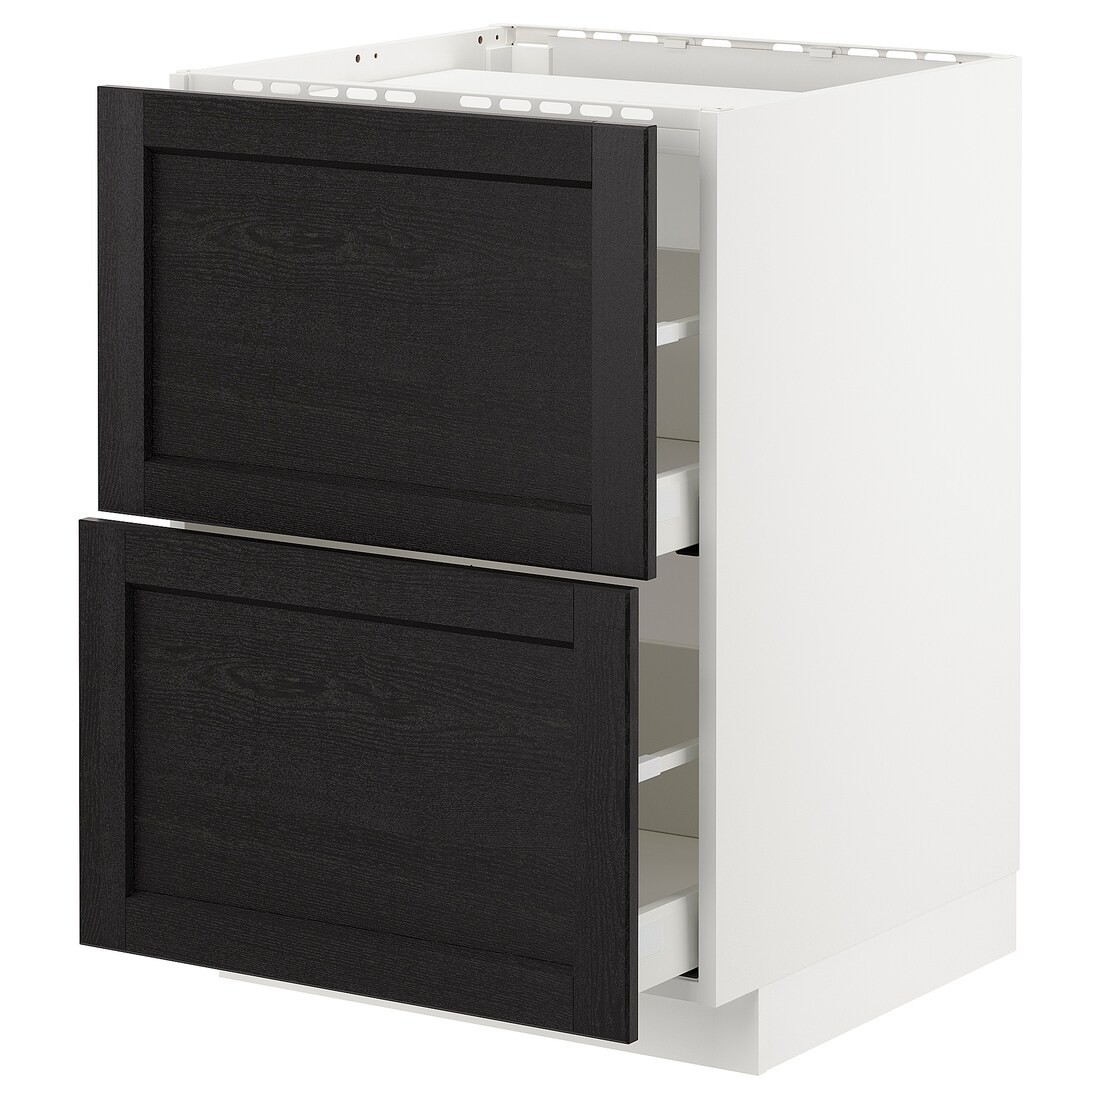 IKEA METOD МЕТОД / MAXIMERA МАКСИМЕРА Шкаф для варочной панели / 2 ящика, белый / Lerhyttan черная морилка, 60x60 см 69257187 | 692.571.87